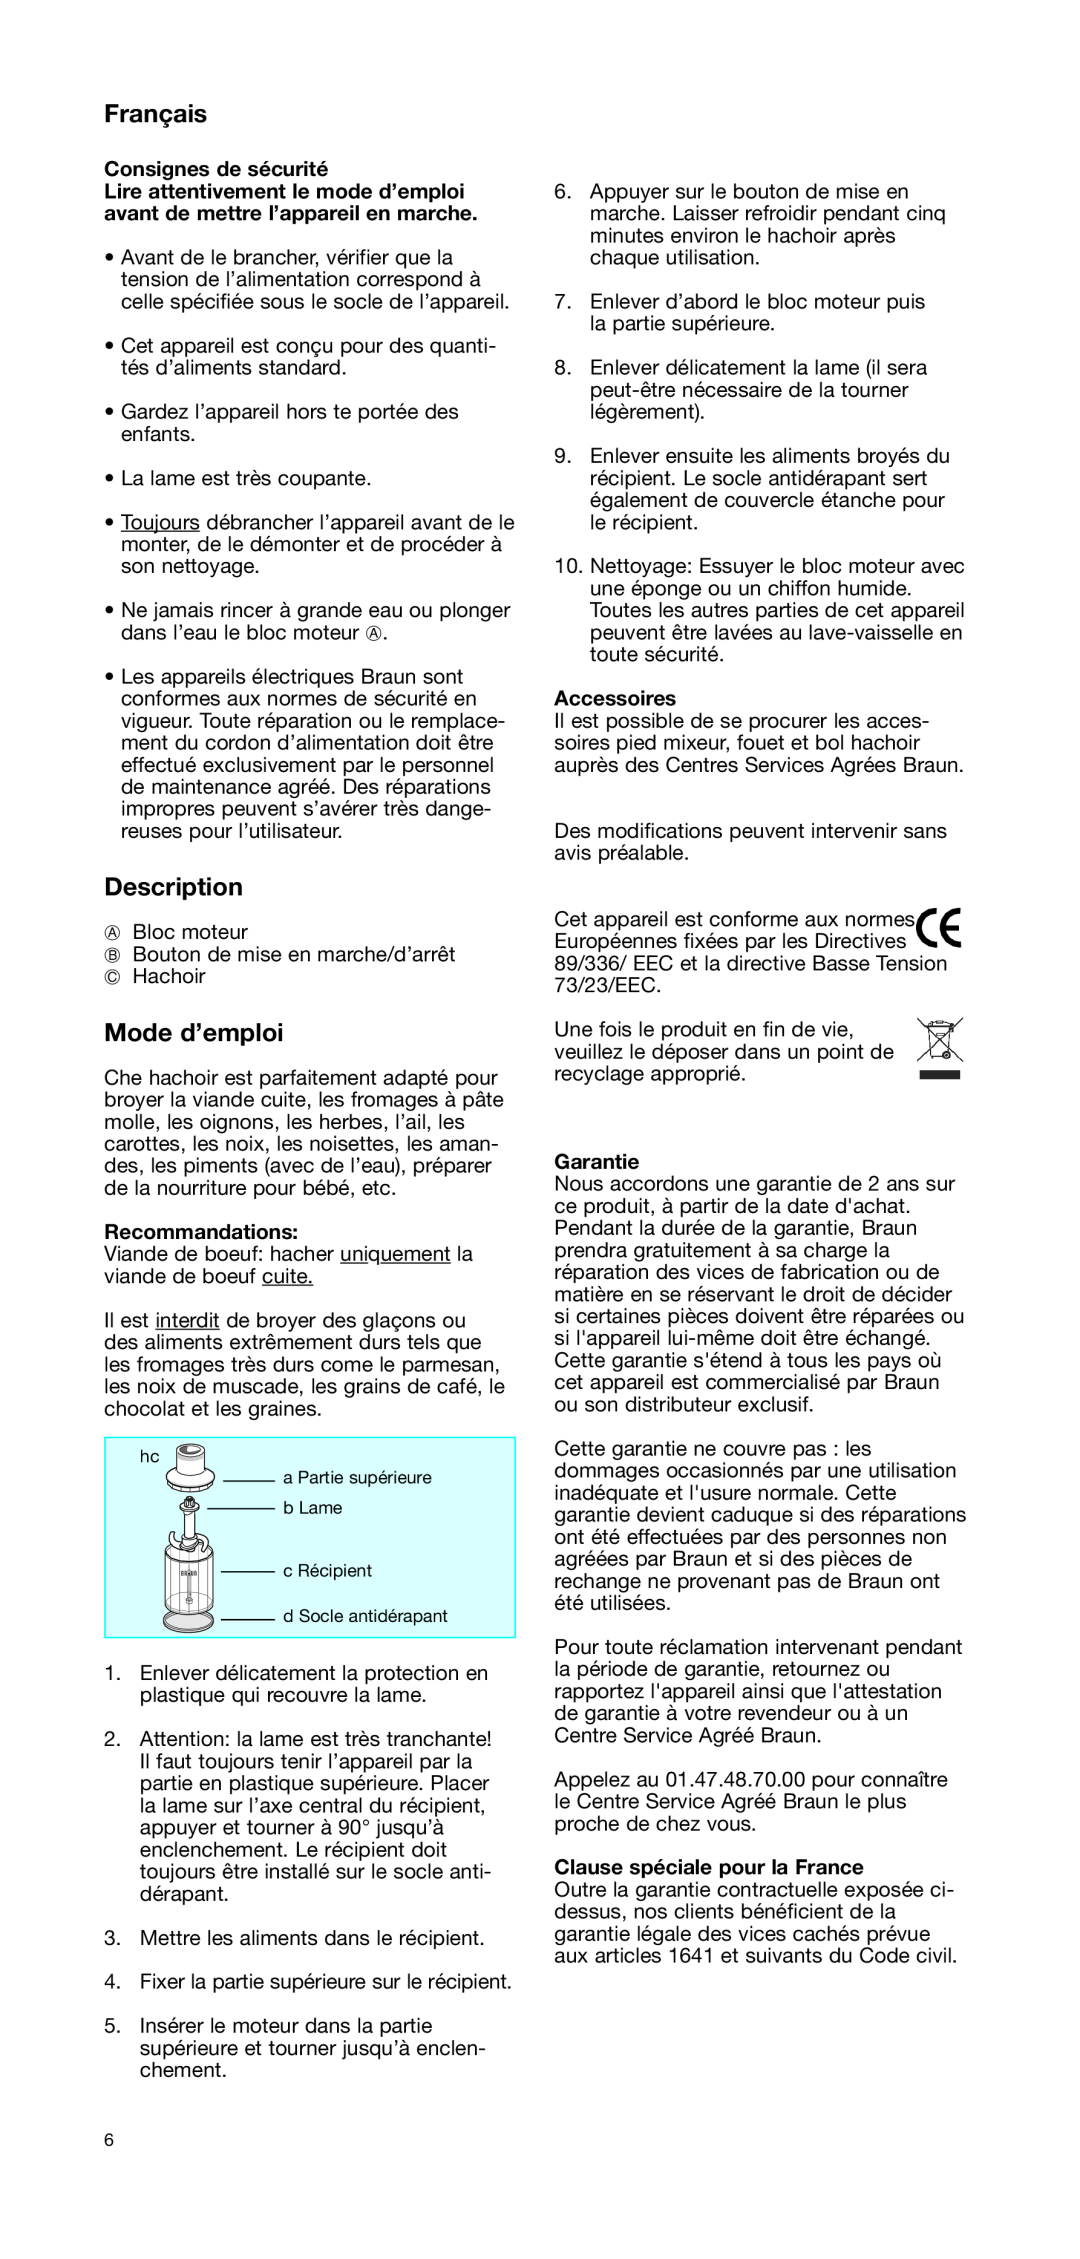 Braun CH 100 manual Français, Mode d’emploi, Description, Consignes de sécurité, Recommandations, Accessoires, Garantie 